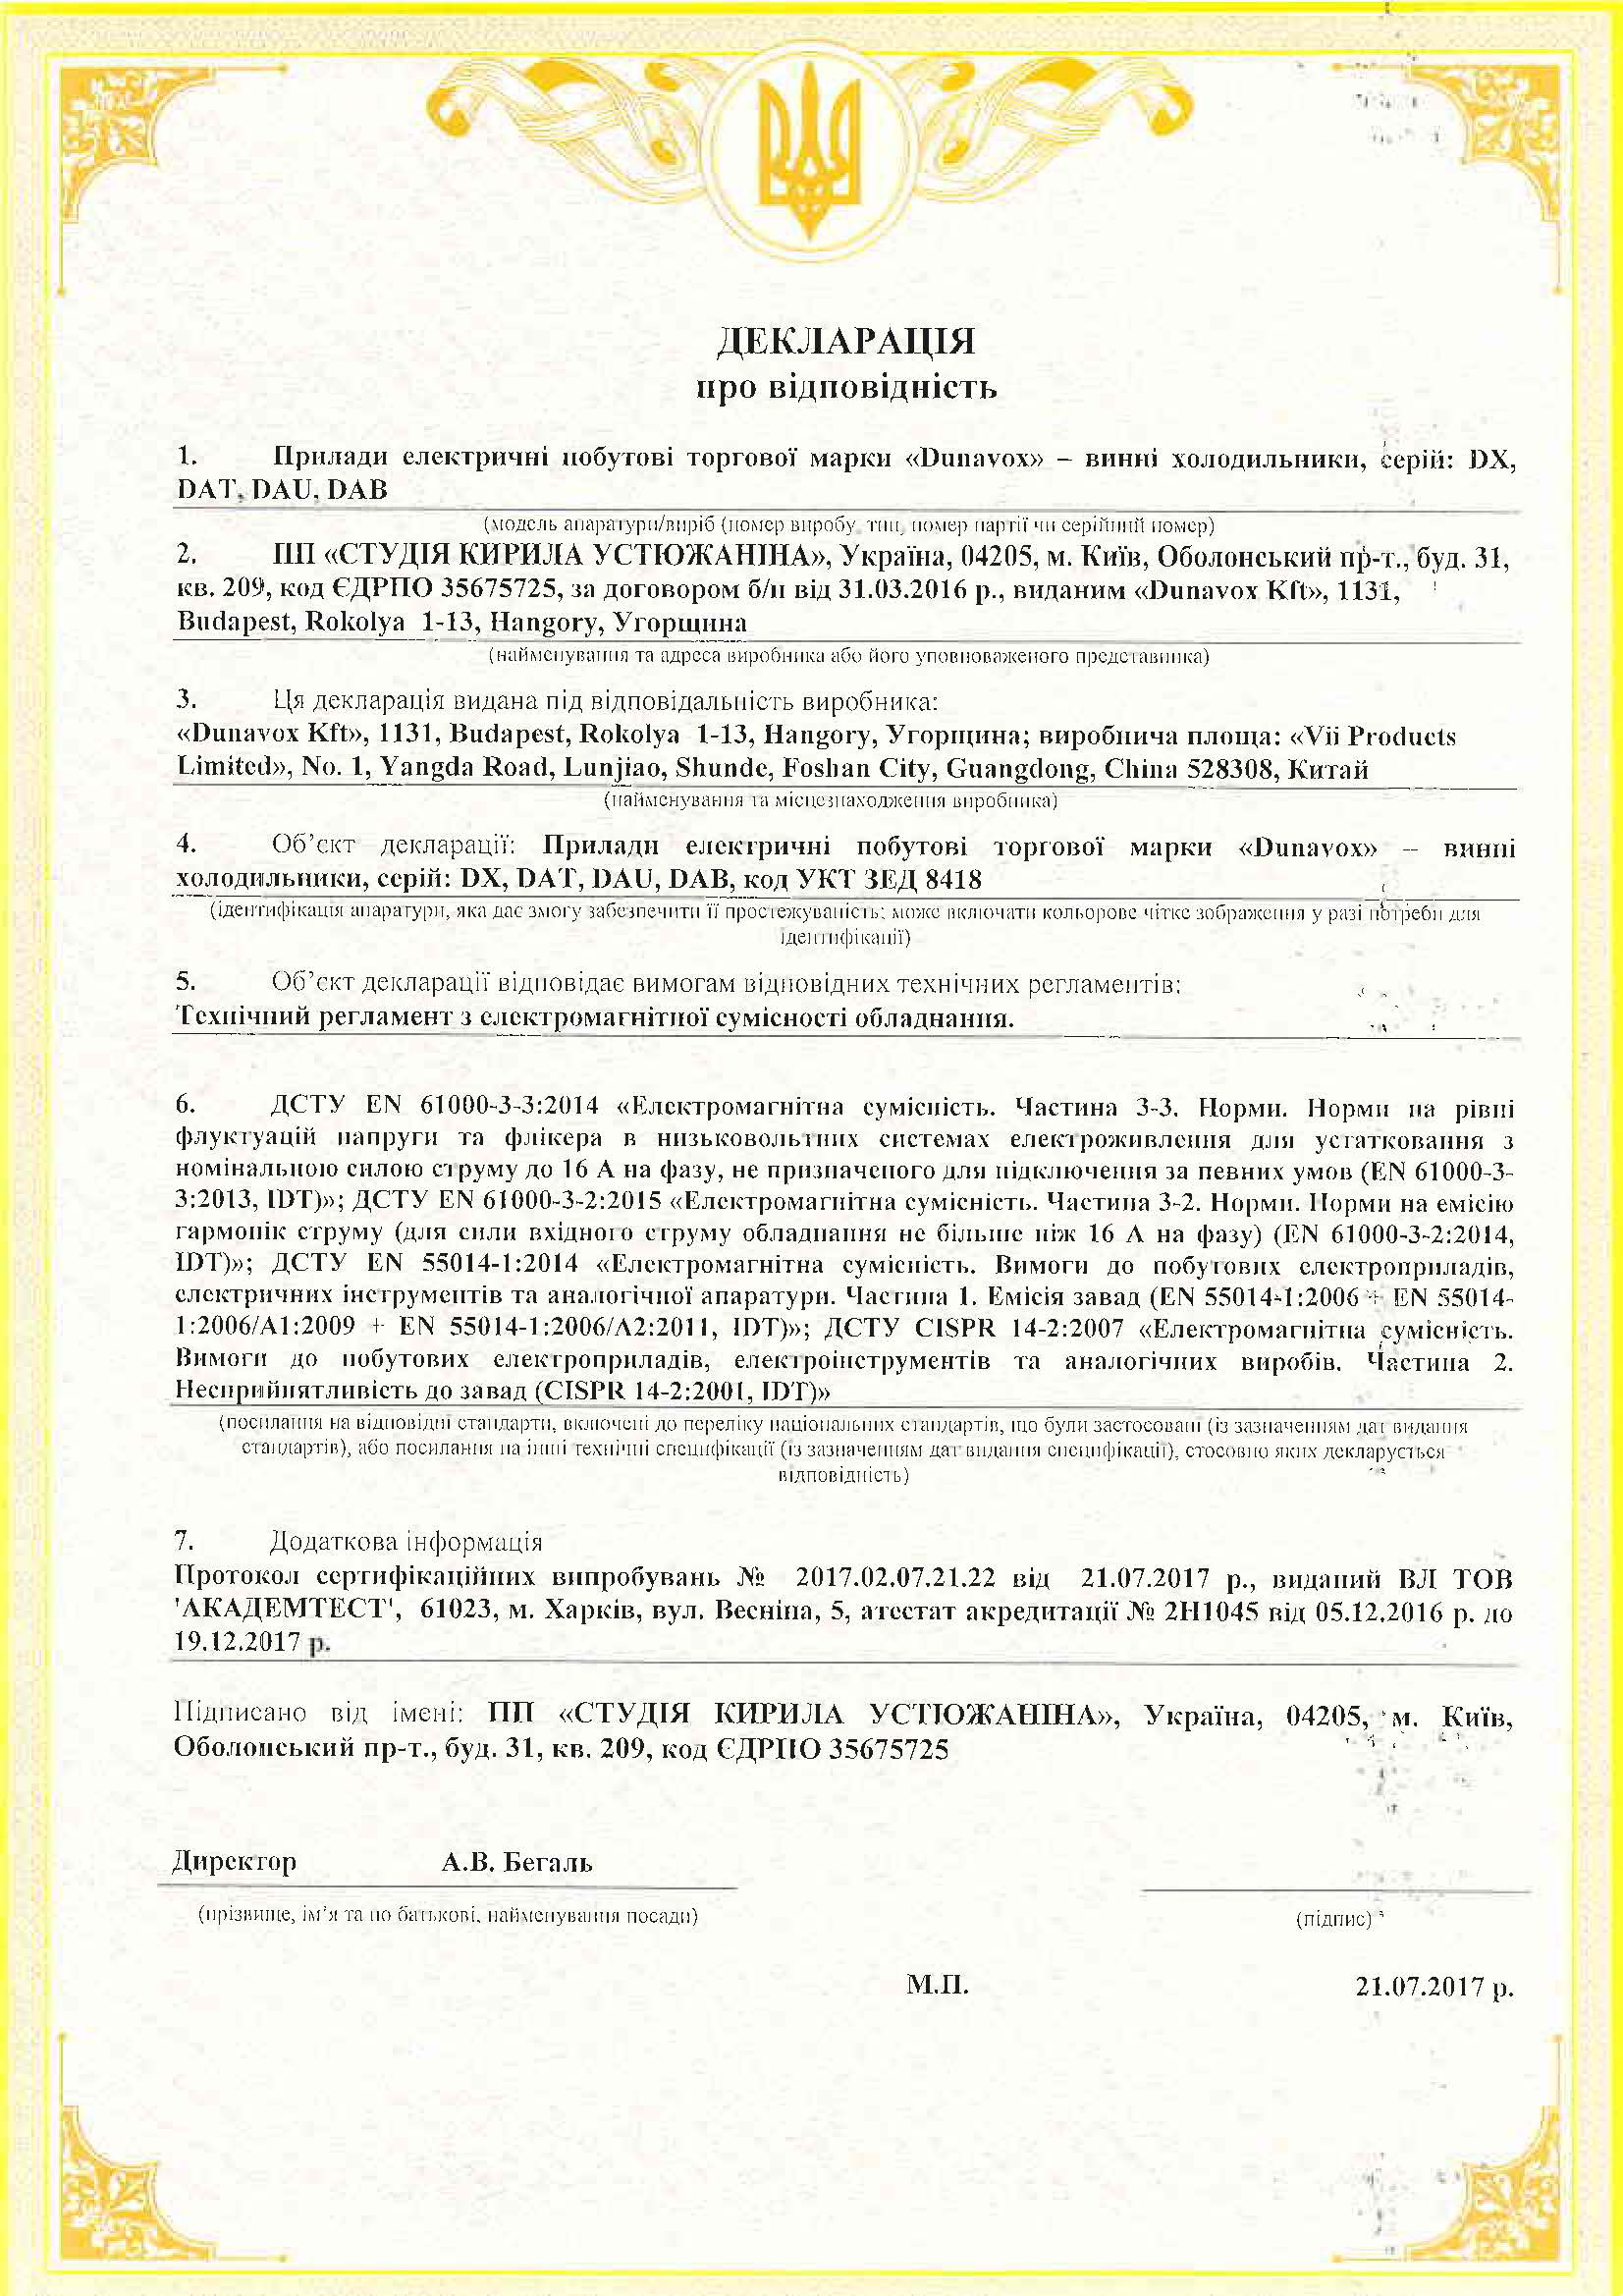 Винные холодильники DUNAVOX сертификат